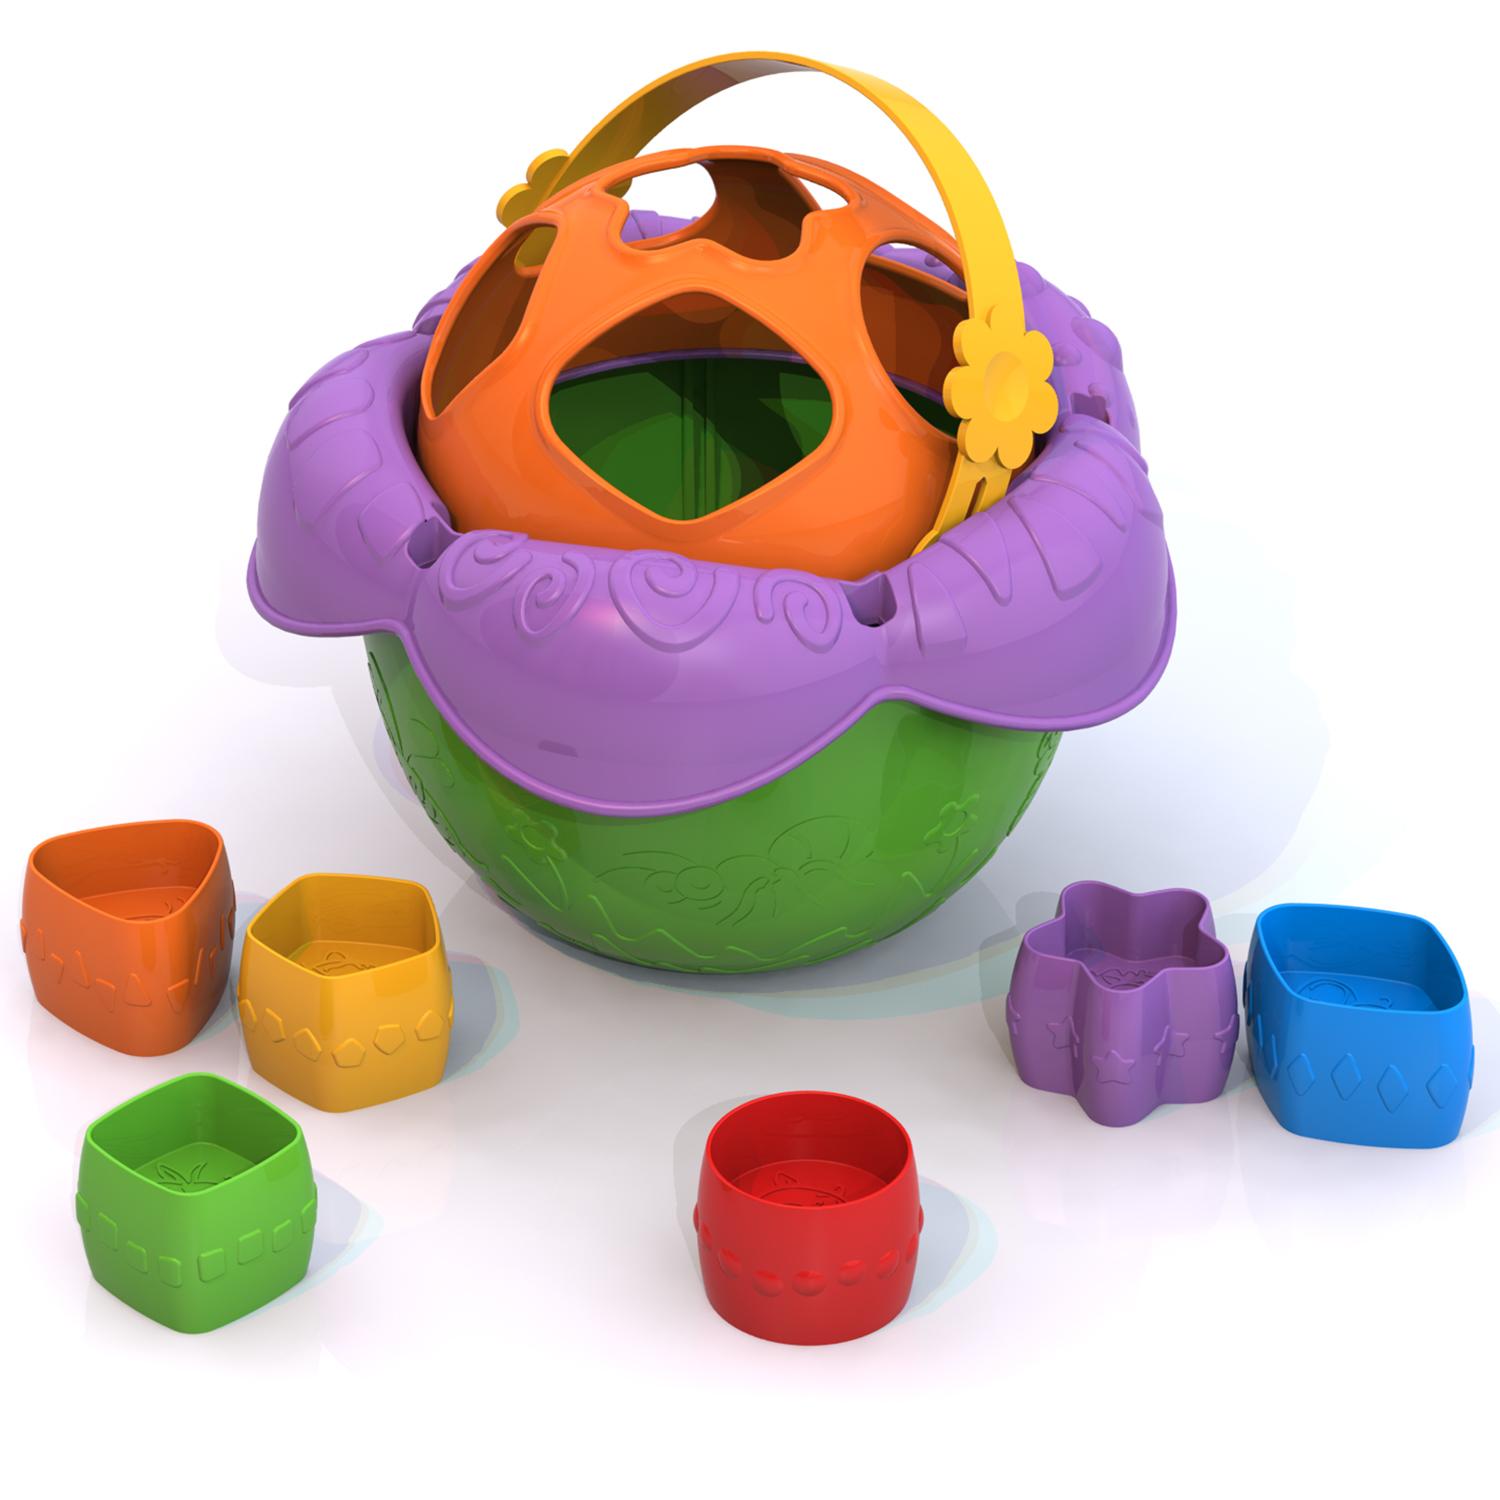 Дидактическая игрушка – Ведро Цветочек  